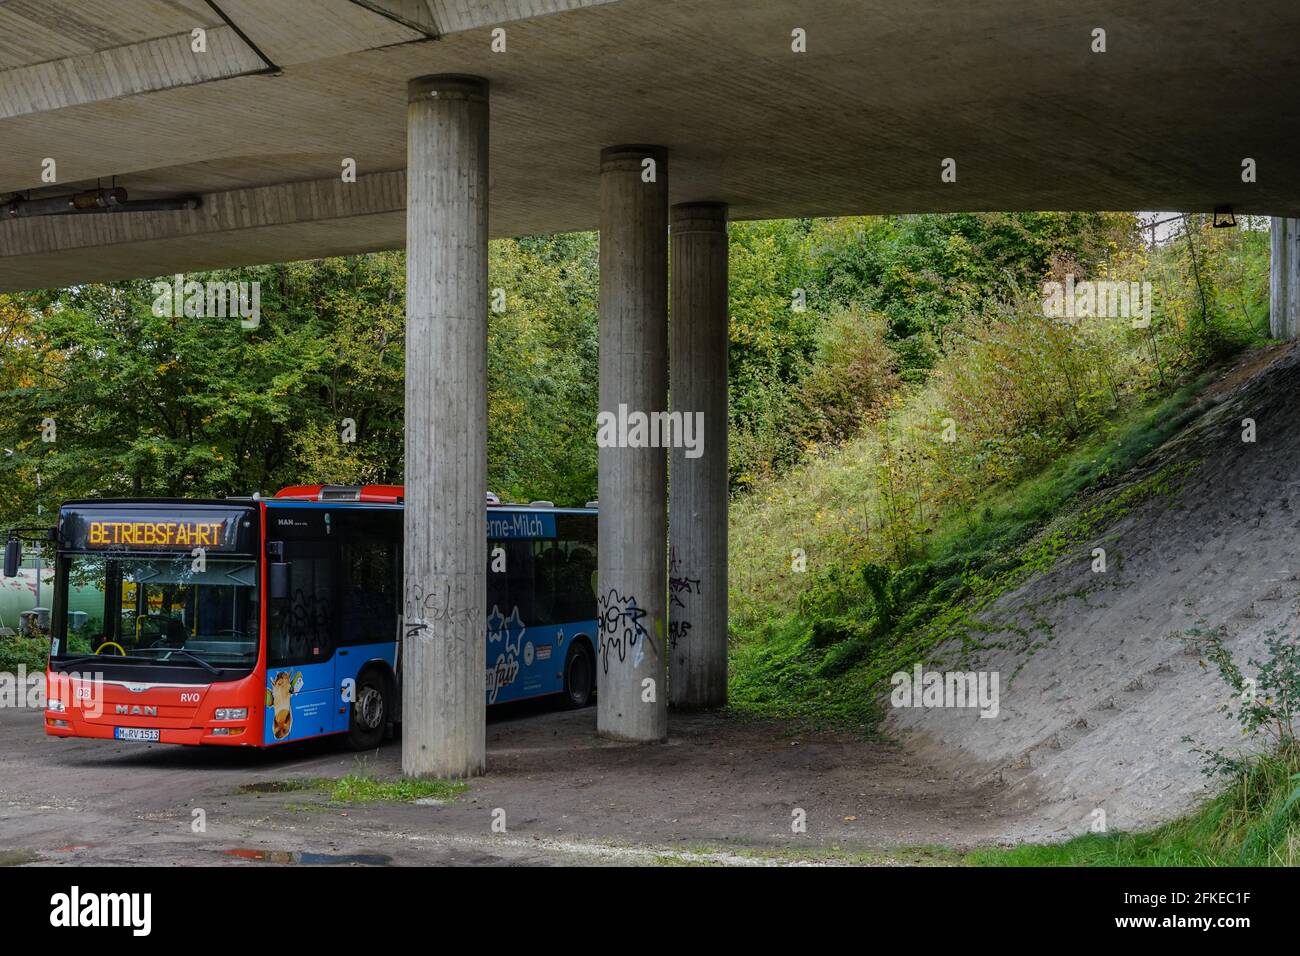 Parked passenger bus under a large concrete bridge. Stock Photo